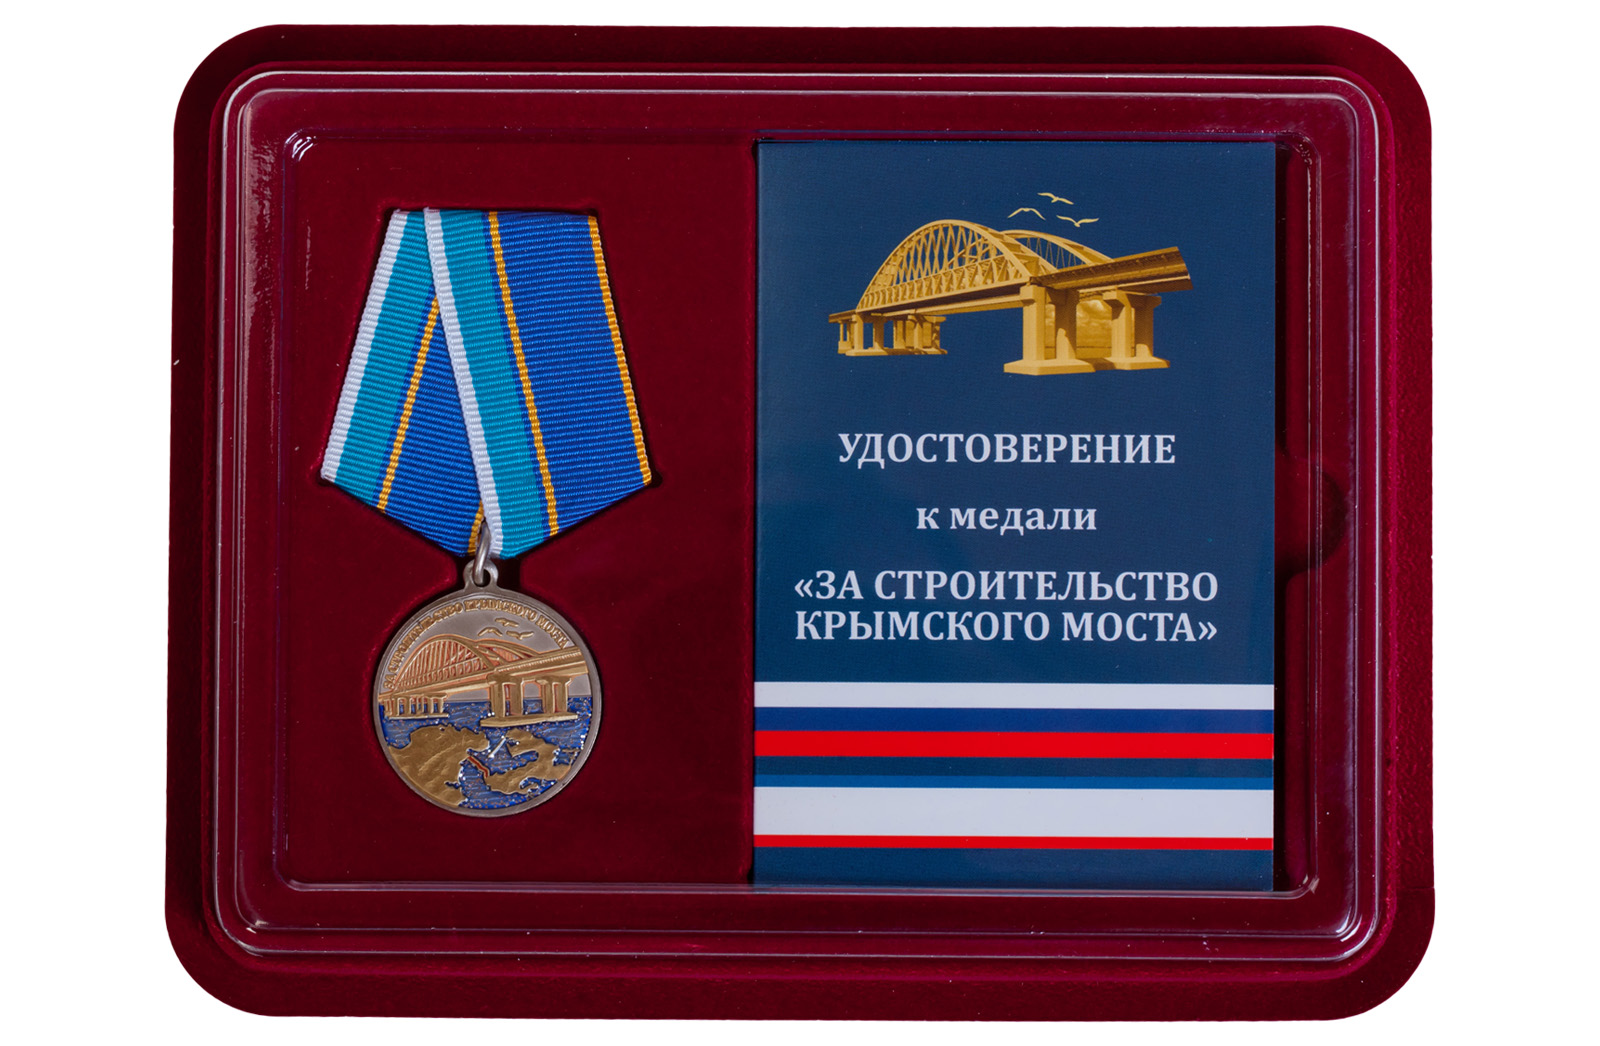 Купить медаль "За строительство Крымского моста" по выгодной цене